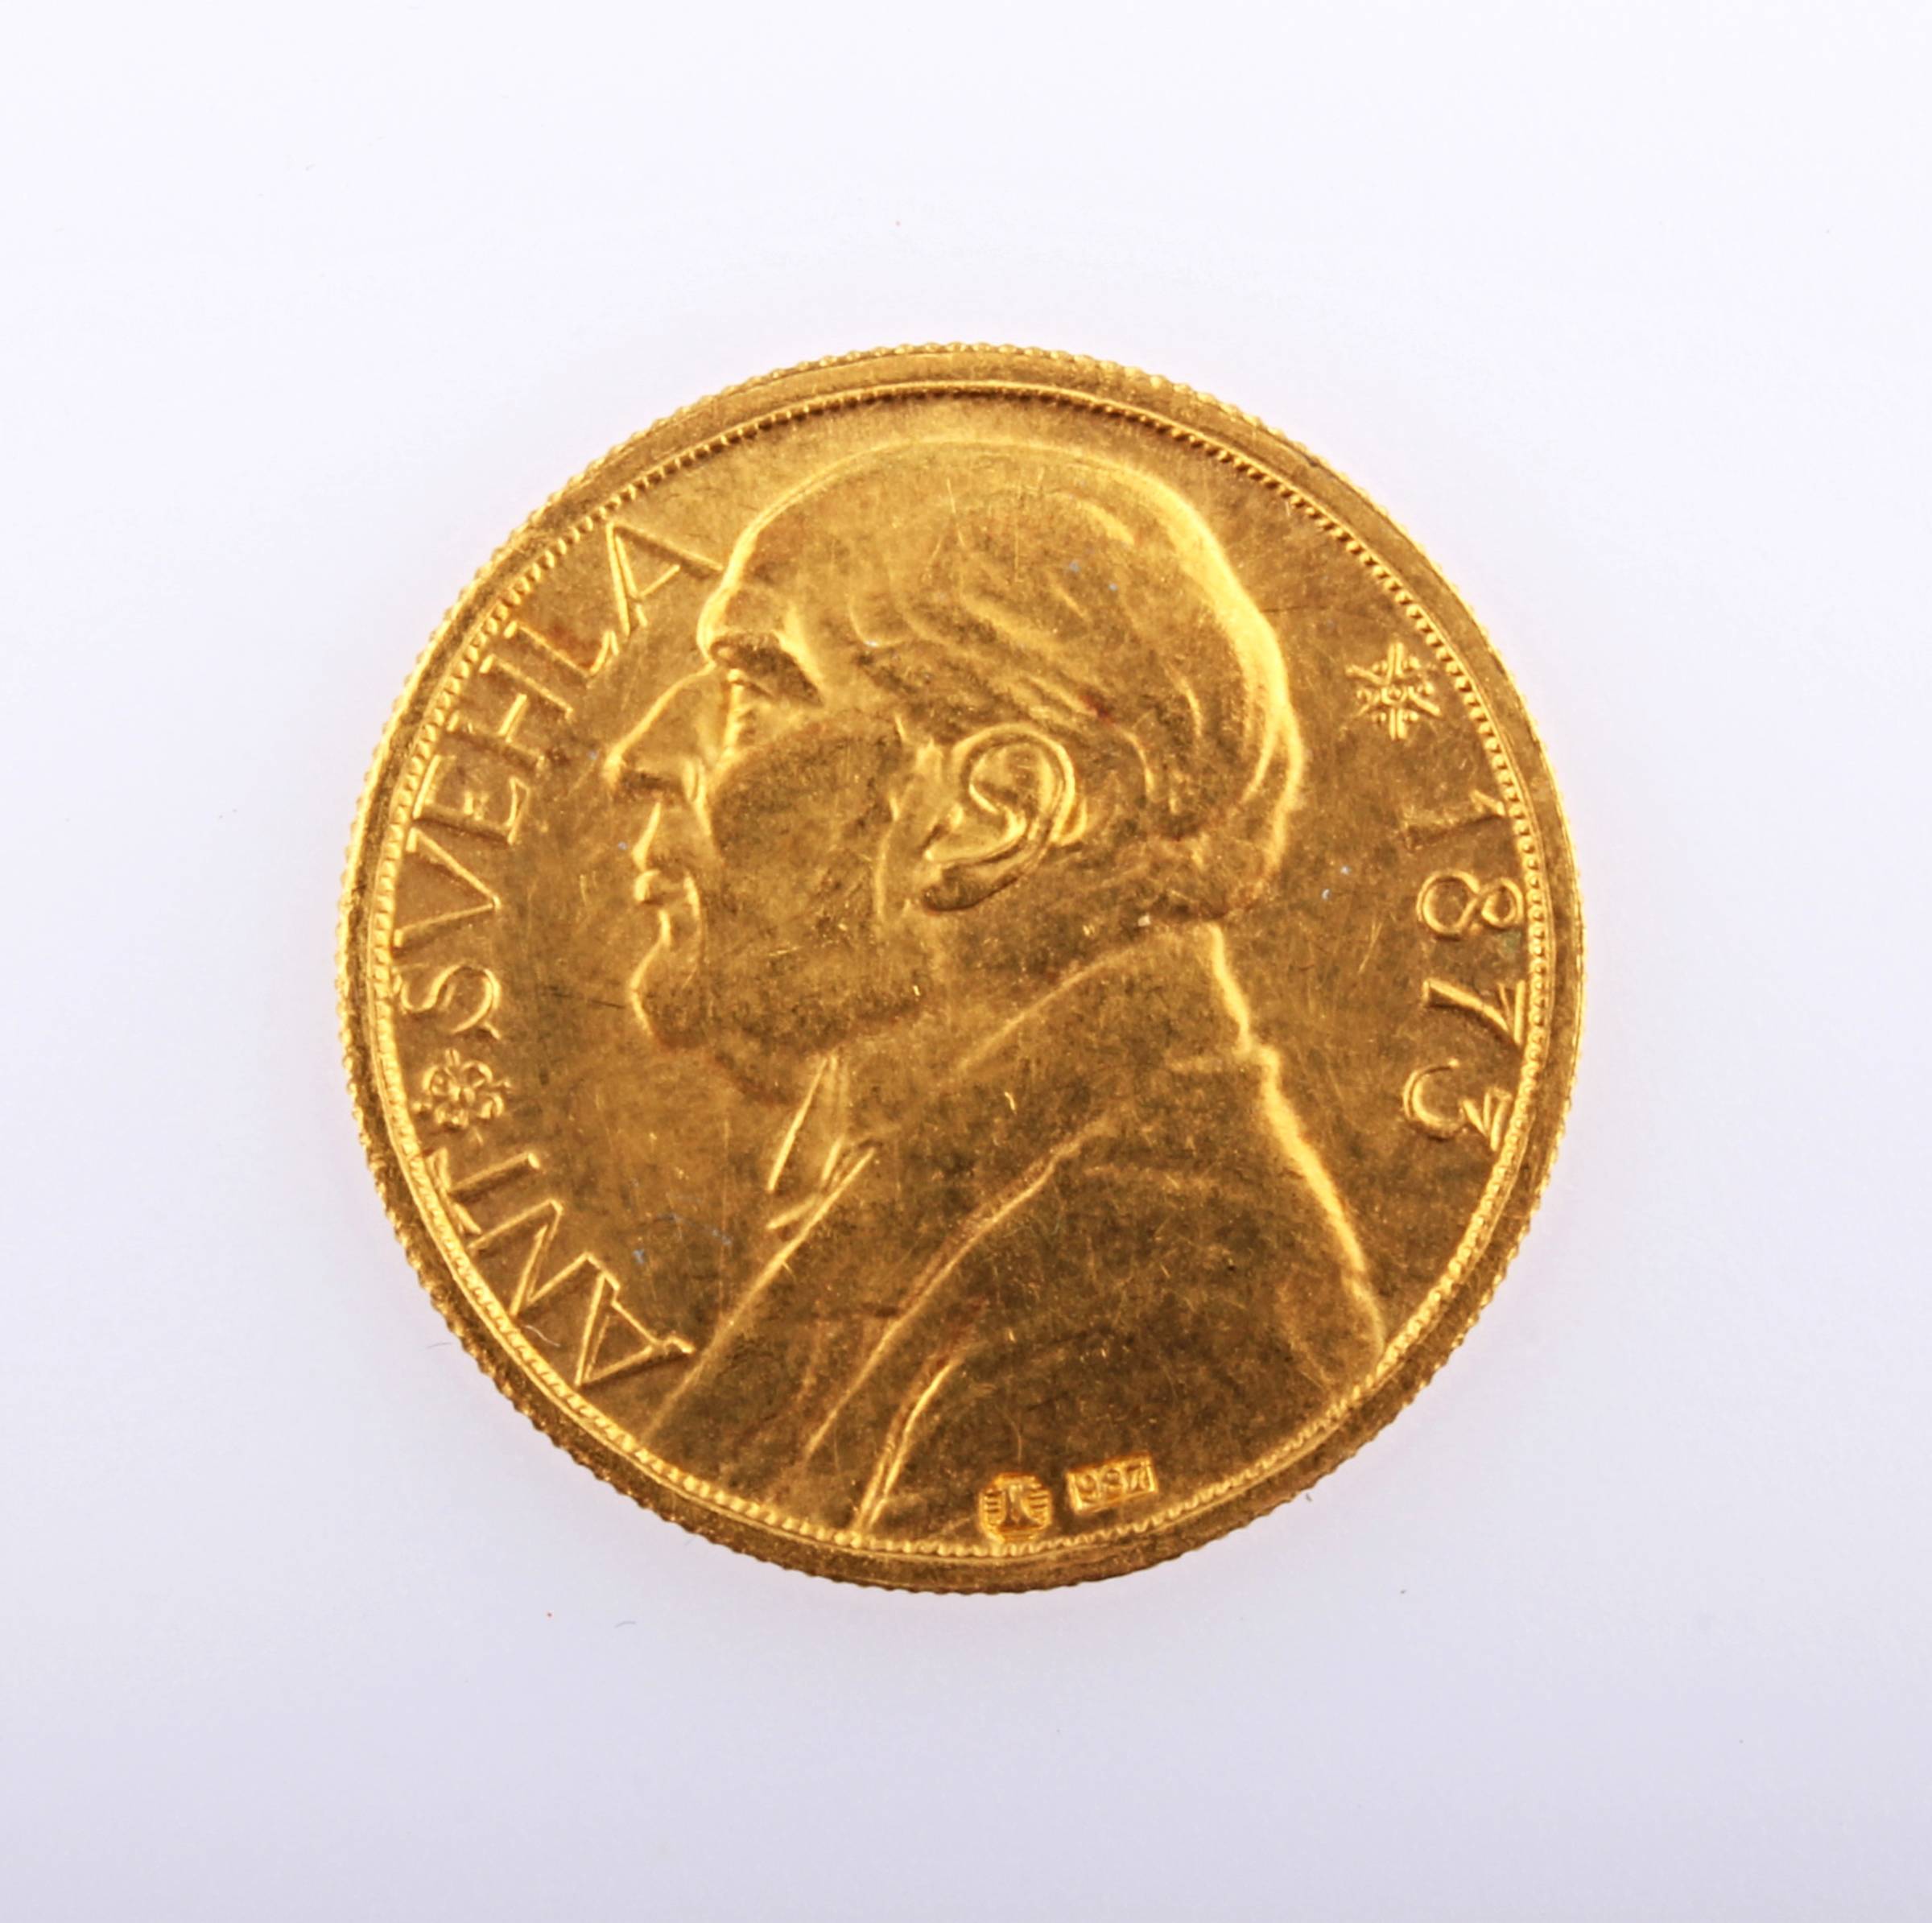 Zlatá dukátová medaile: Antonín Švehla - Vyšel rozsévač 1933